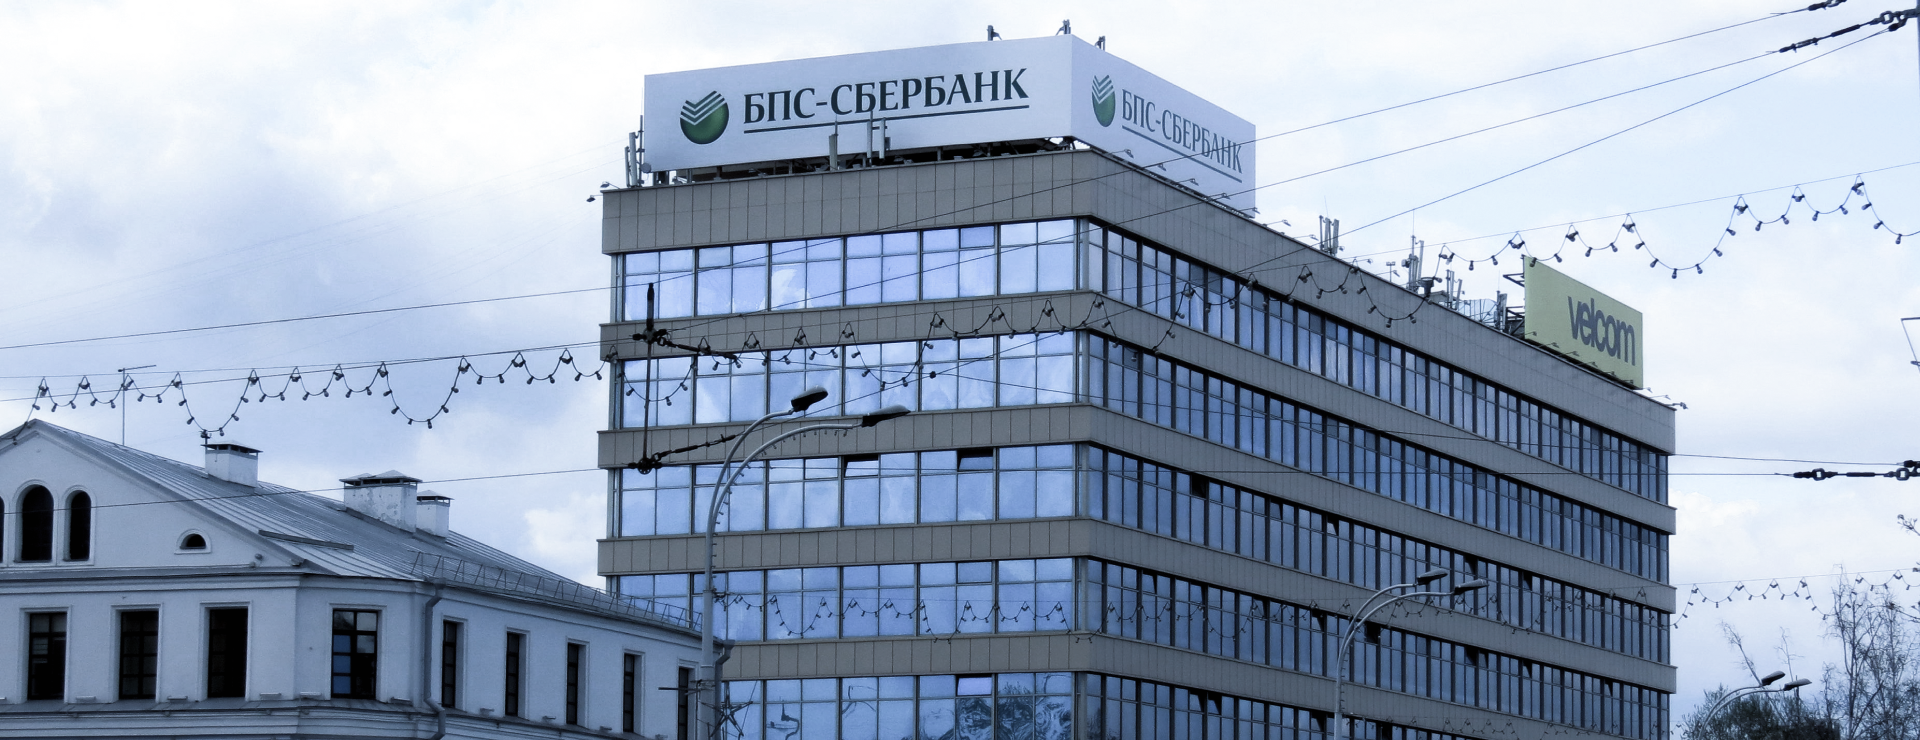 Построение центра обслуживания вызовов ОАО "БПС-Сбербанк"